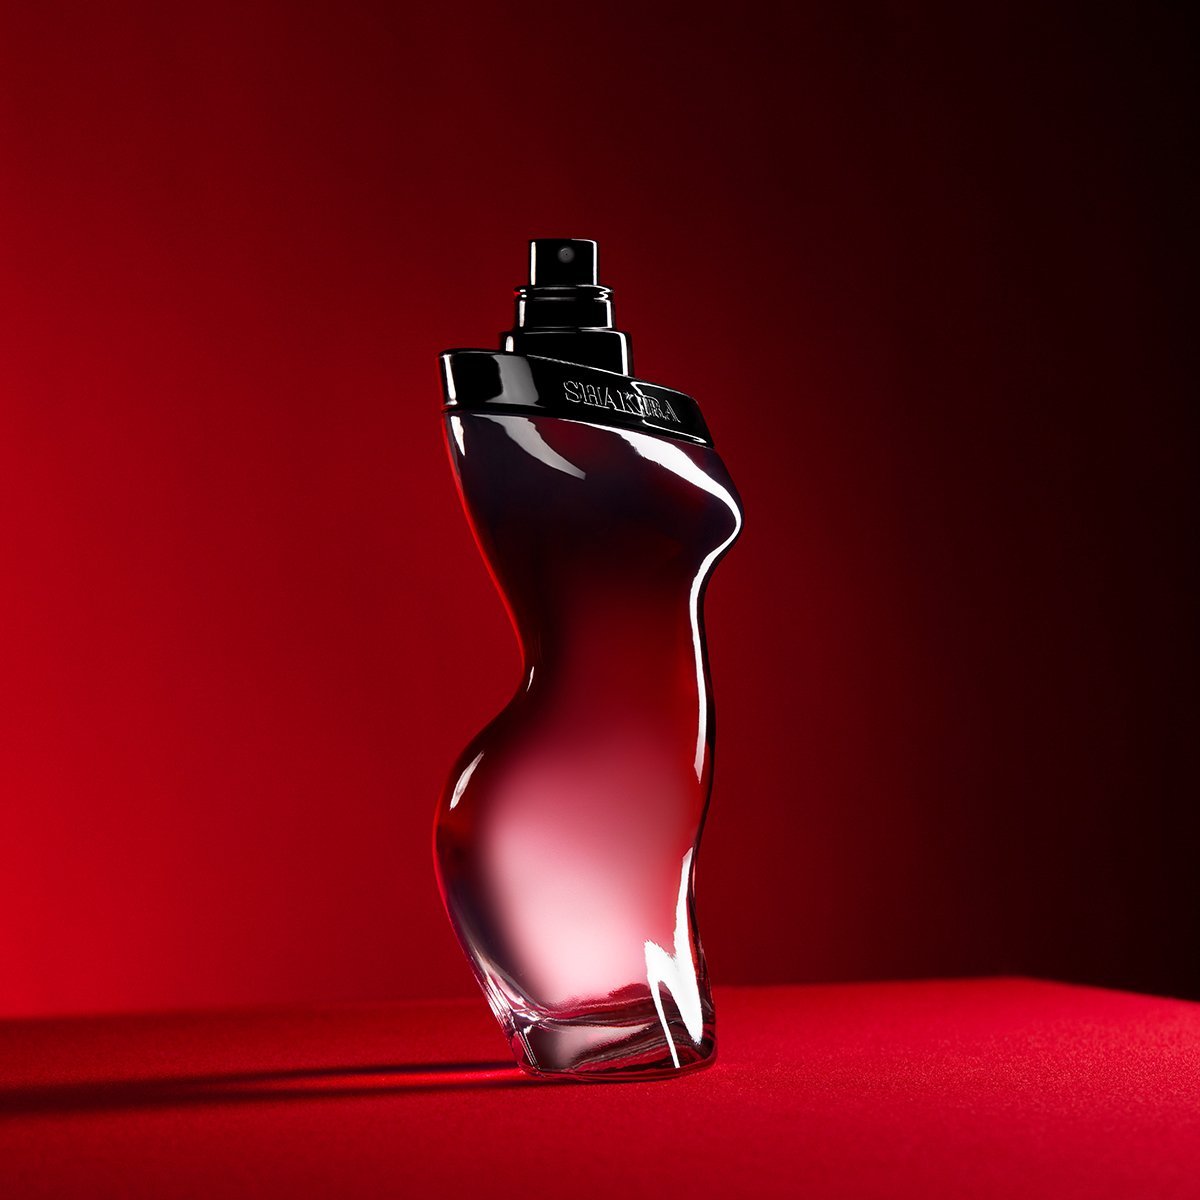 Shakira Dance Red Midnight Edt 80Ml Perfume para Mujer